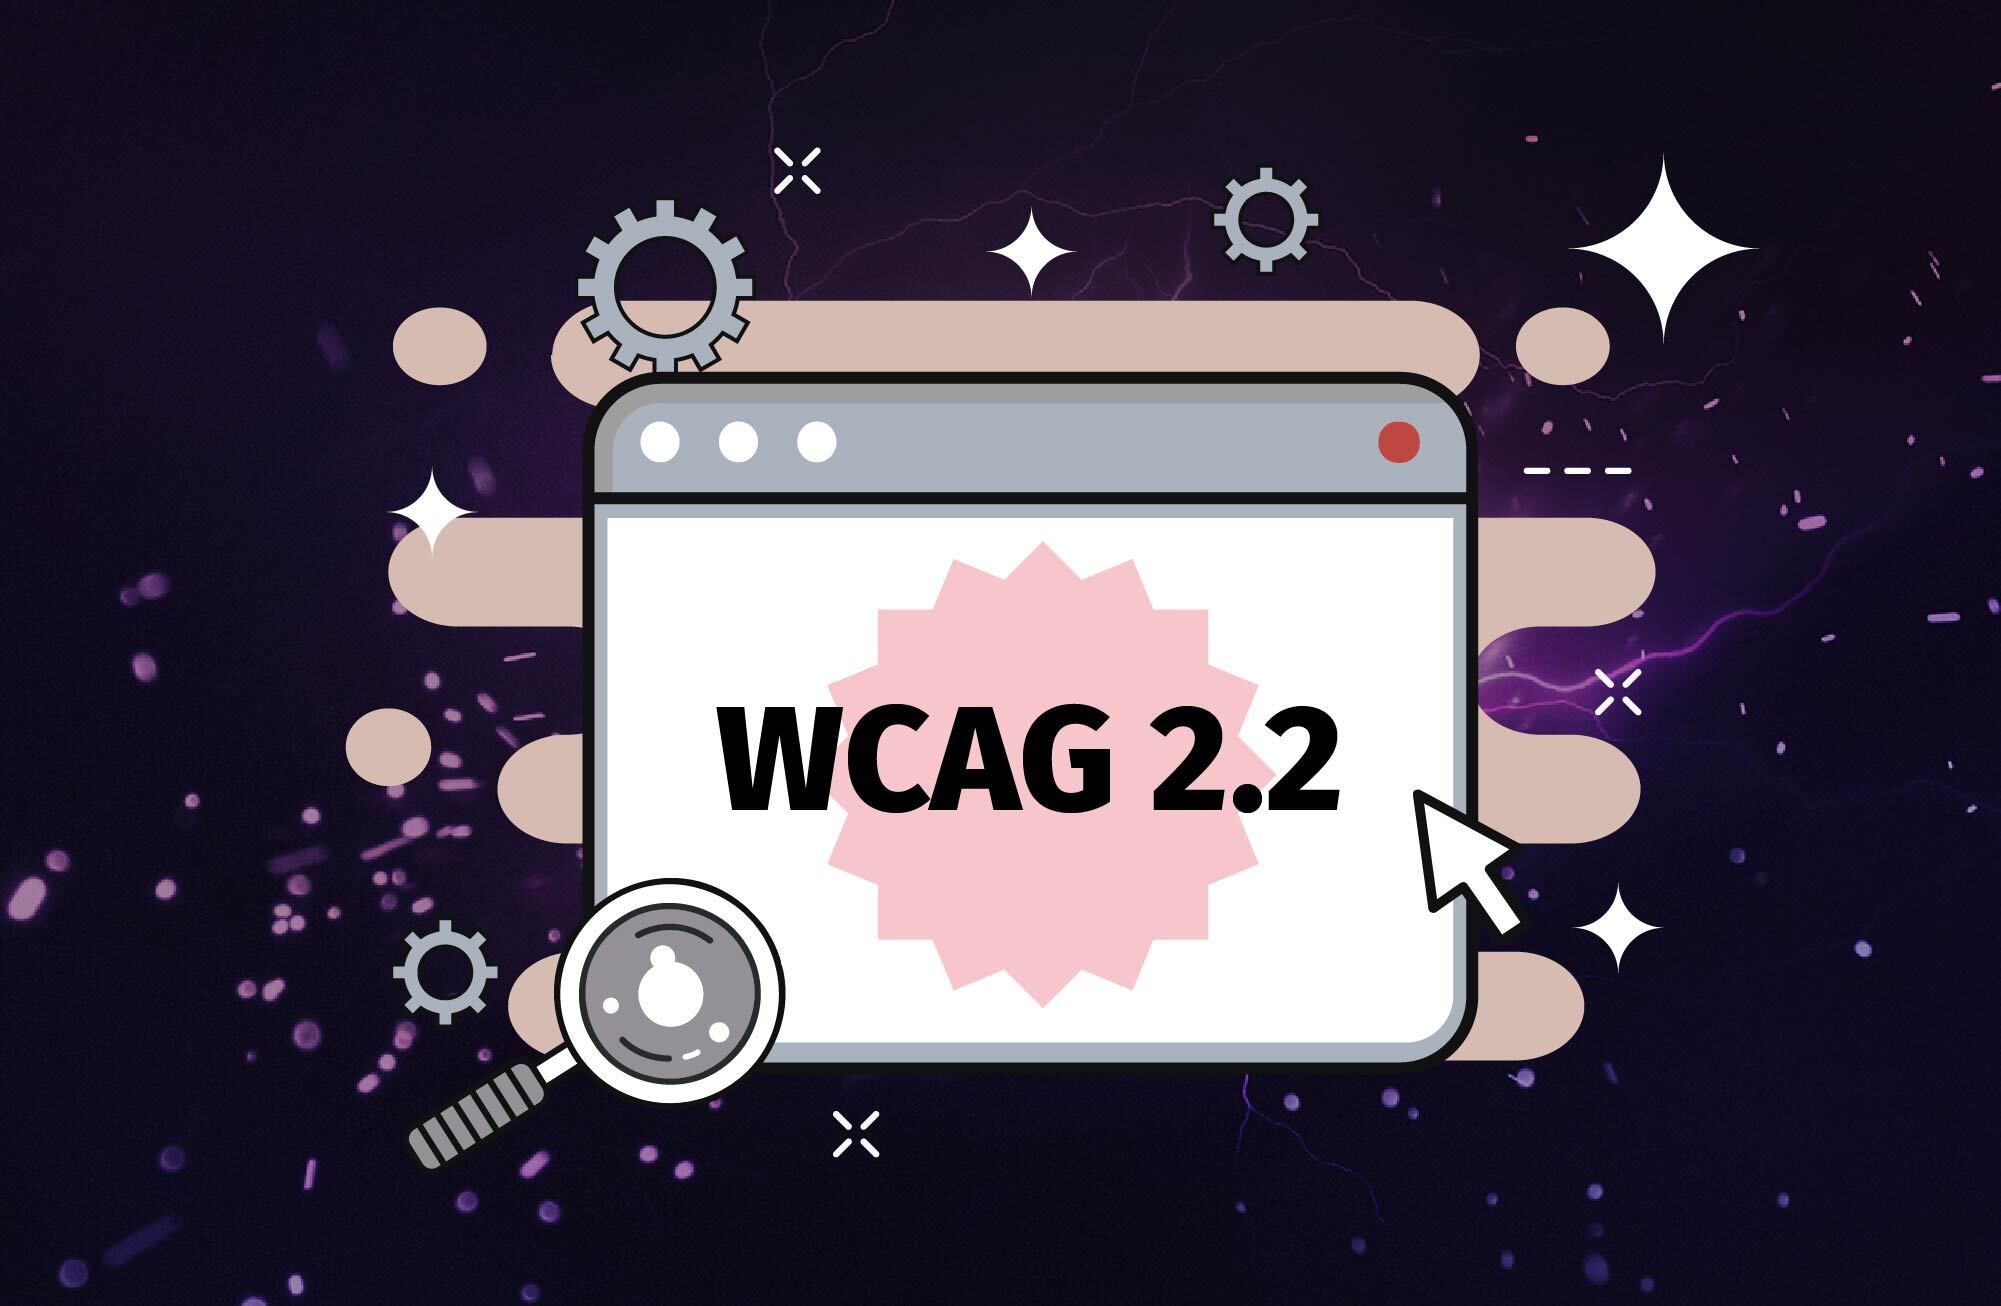 Uudet verkkosisällön saavutettavuusohjeet (WCAG 2.2) on julkaistu